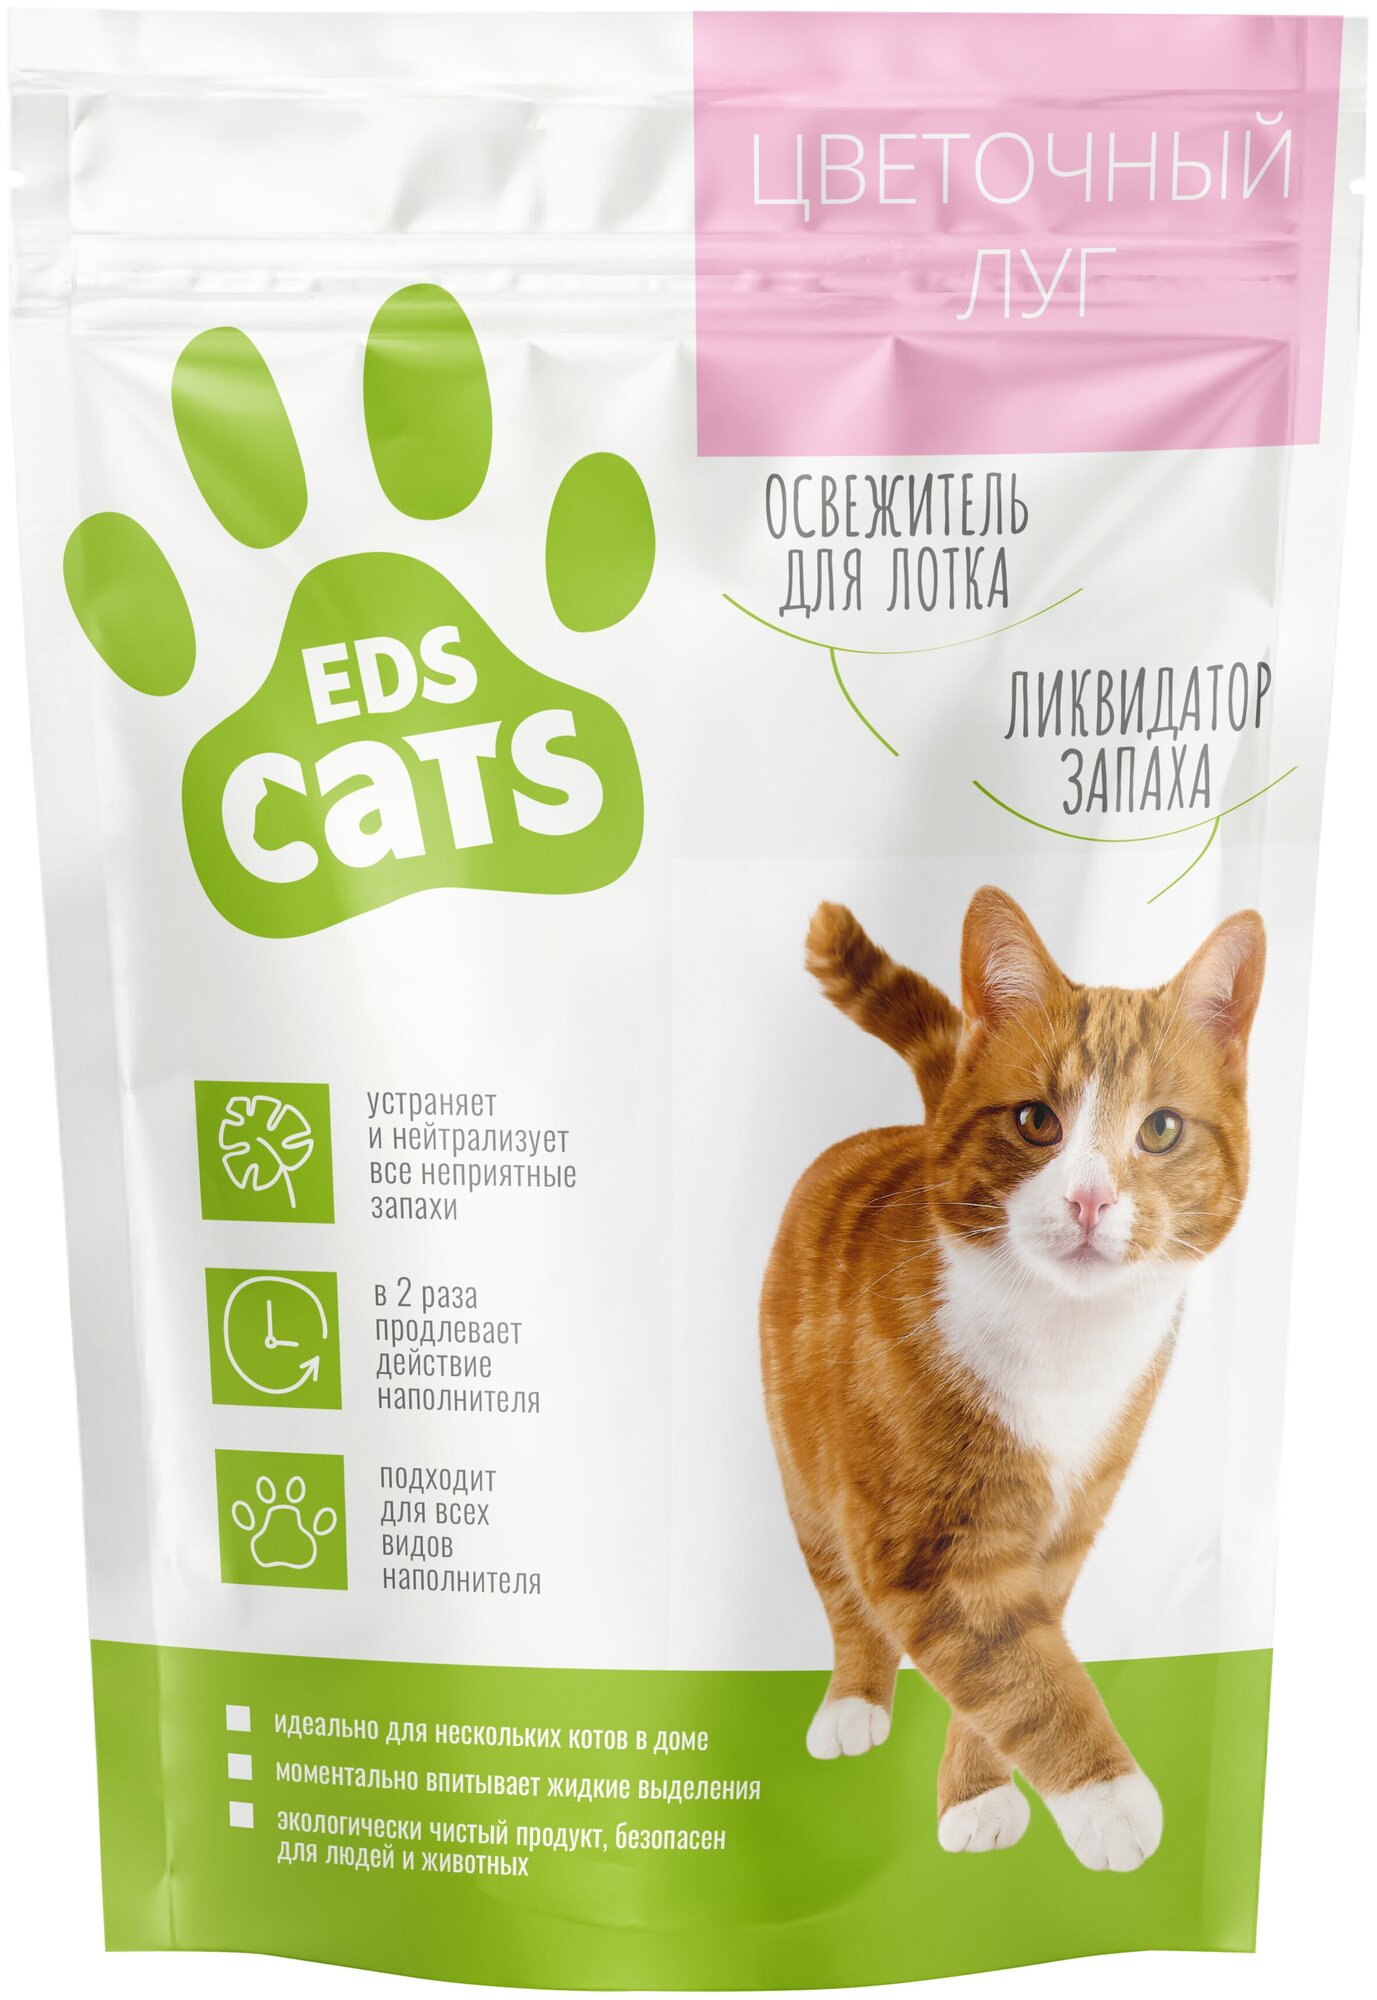 Ликвидатор запаха для кошачьего туалета EDS CATS Цветочный луг 400г.